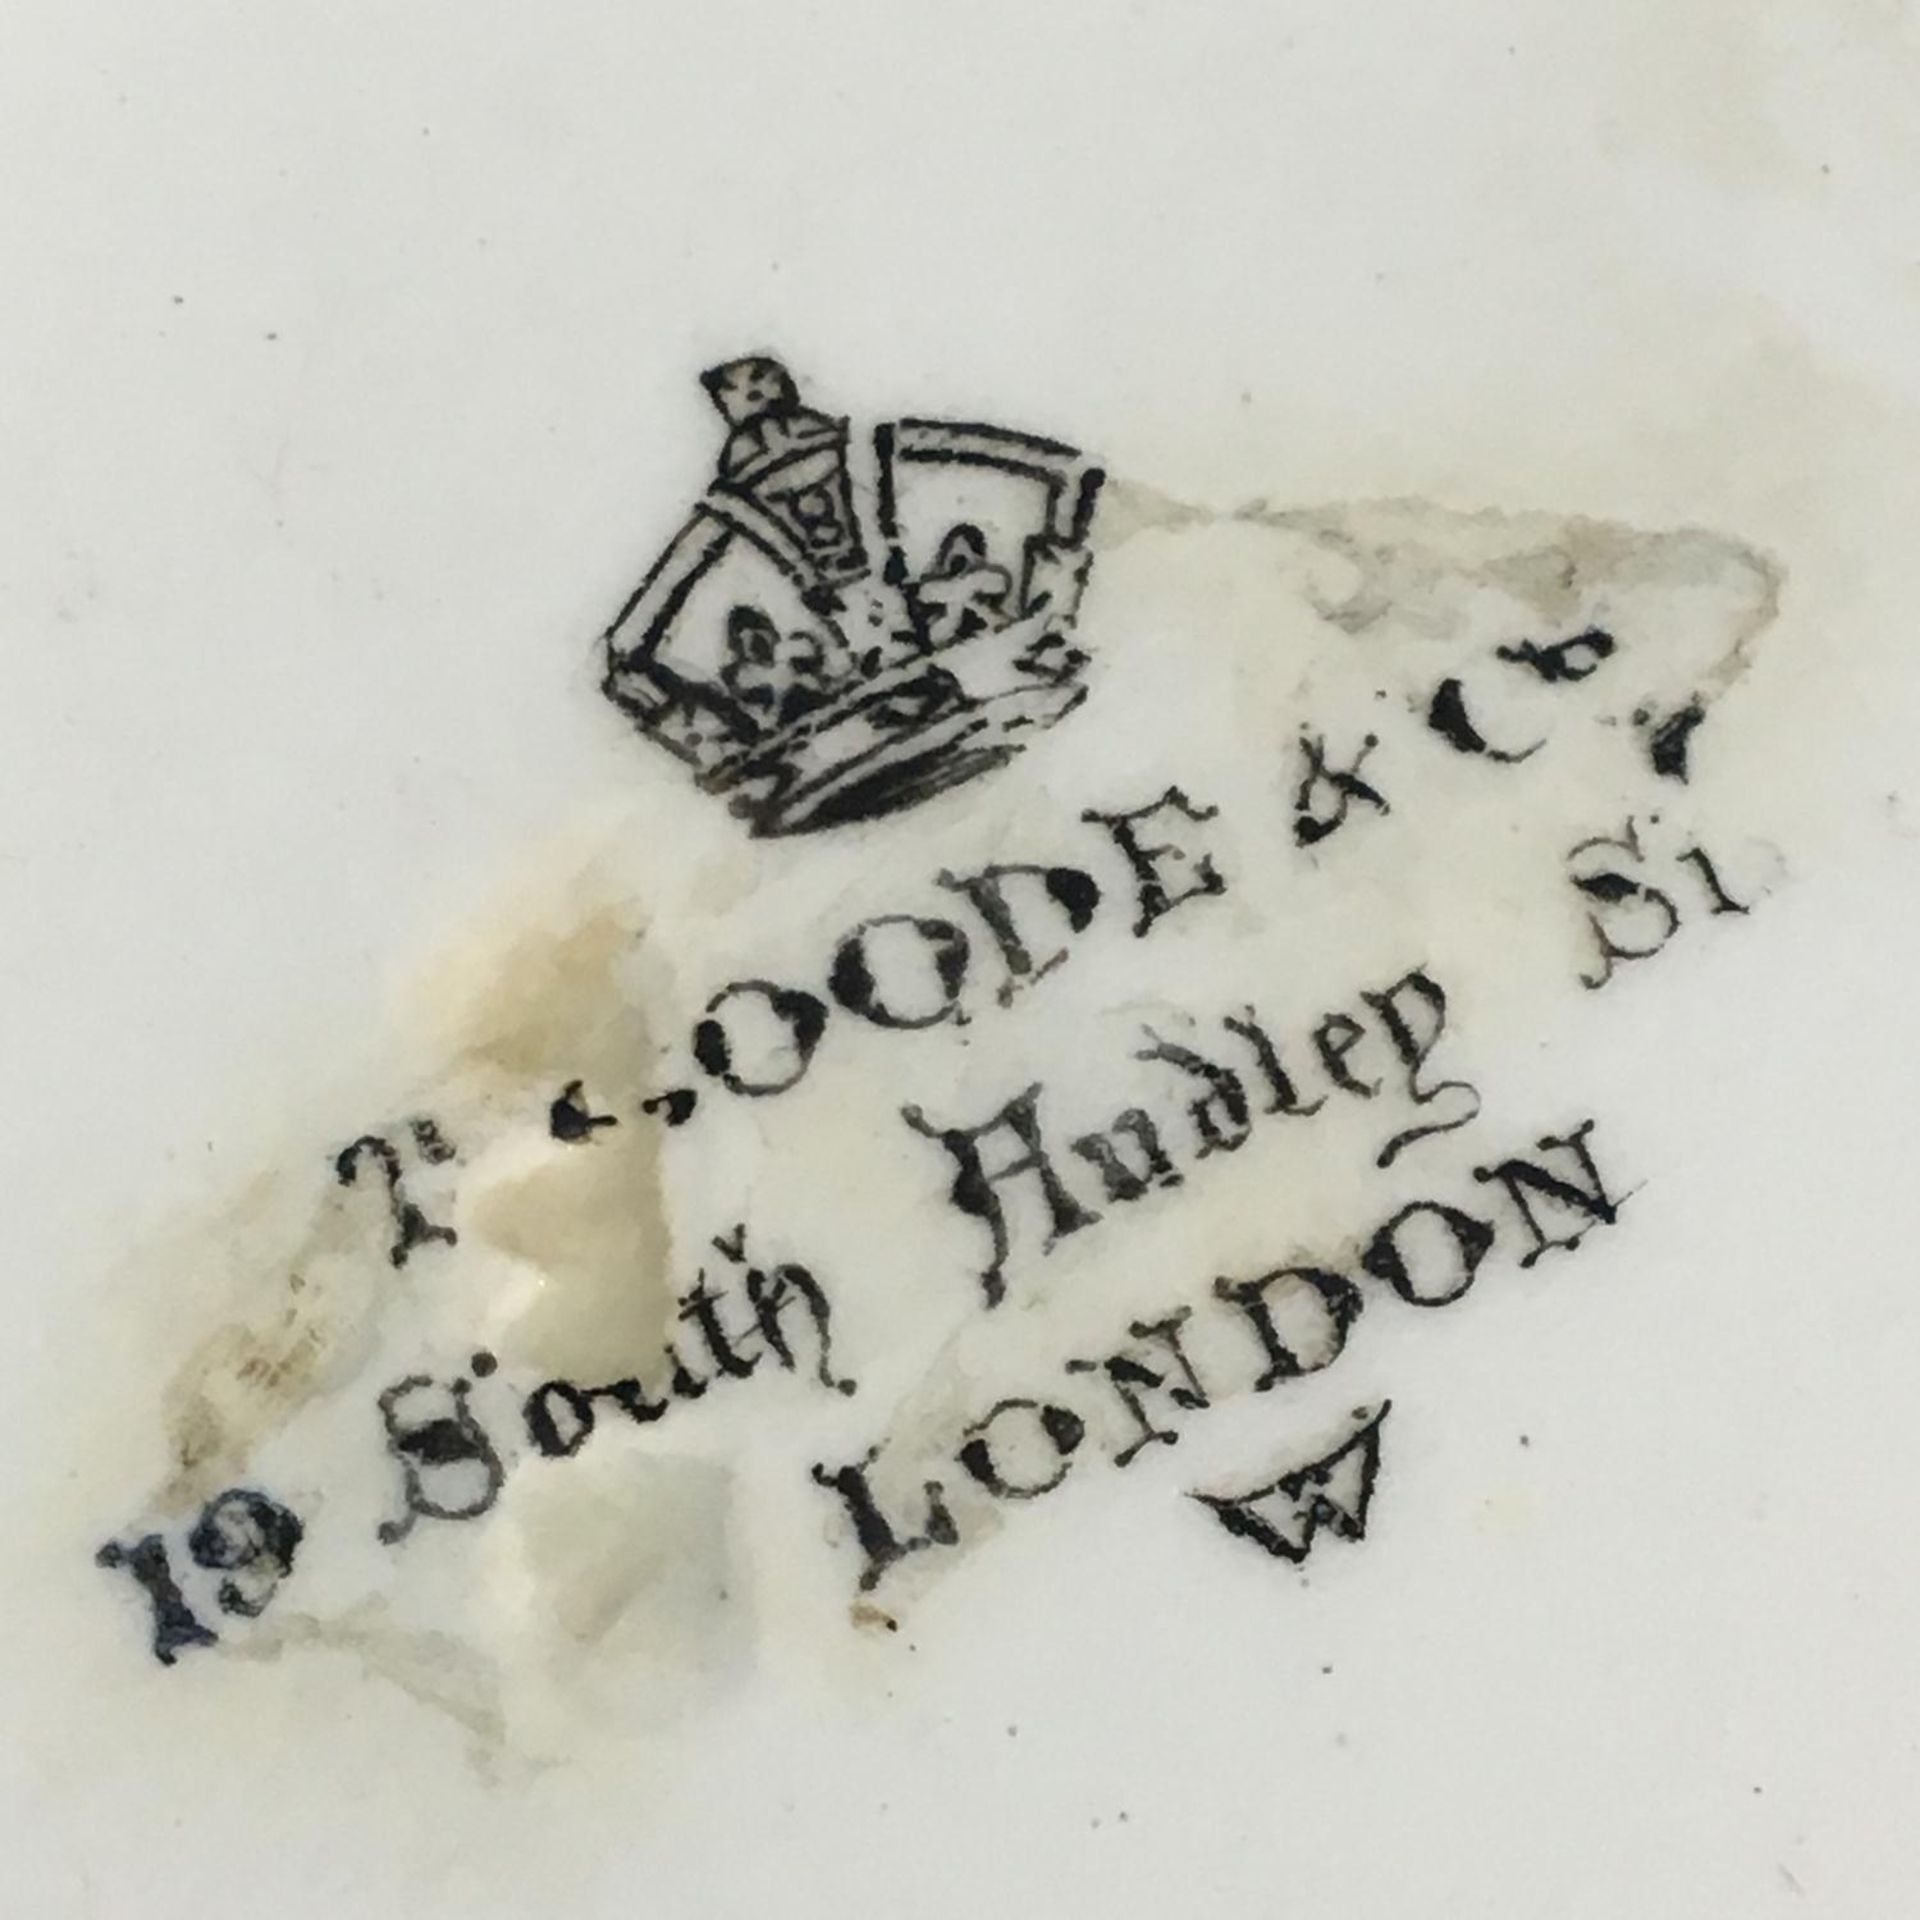 19th century heraldic plate and bowl "vertute et opera" motto of Duke of Fife - Image 4 of 4